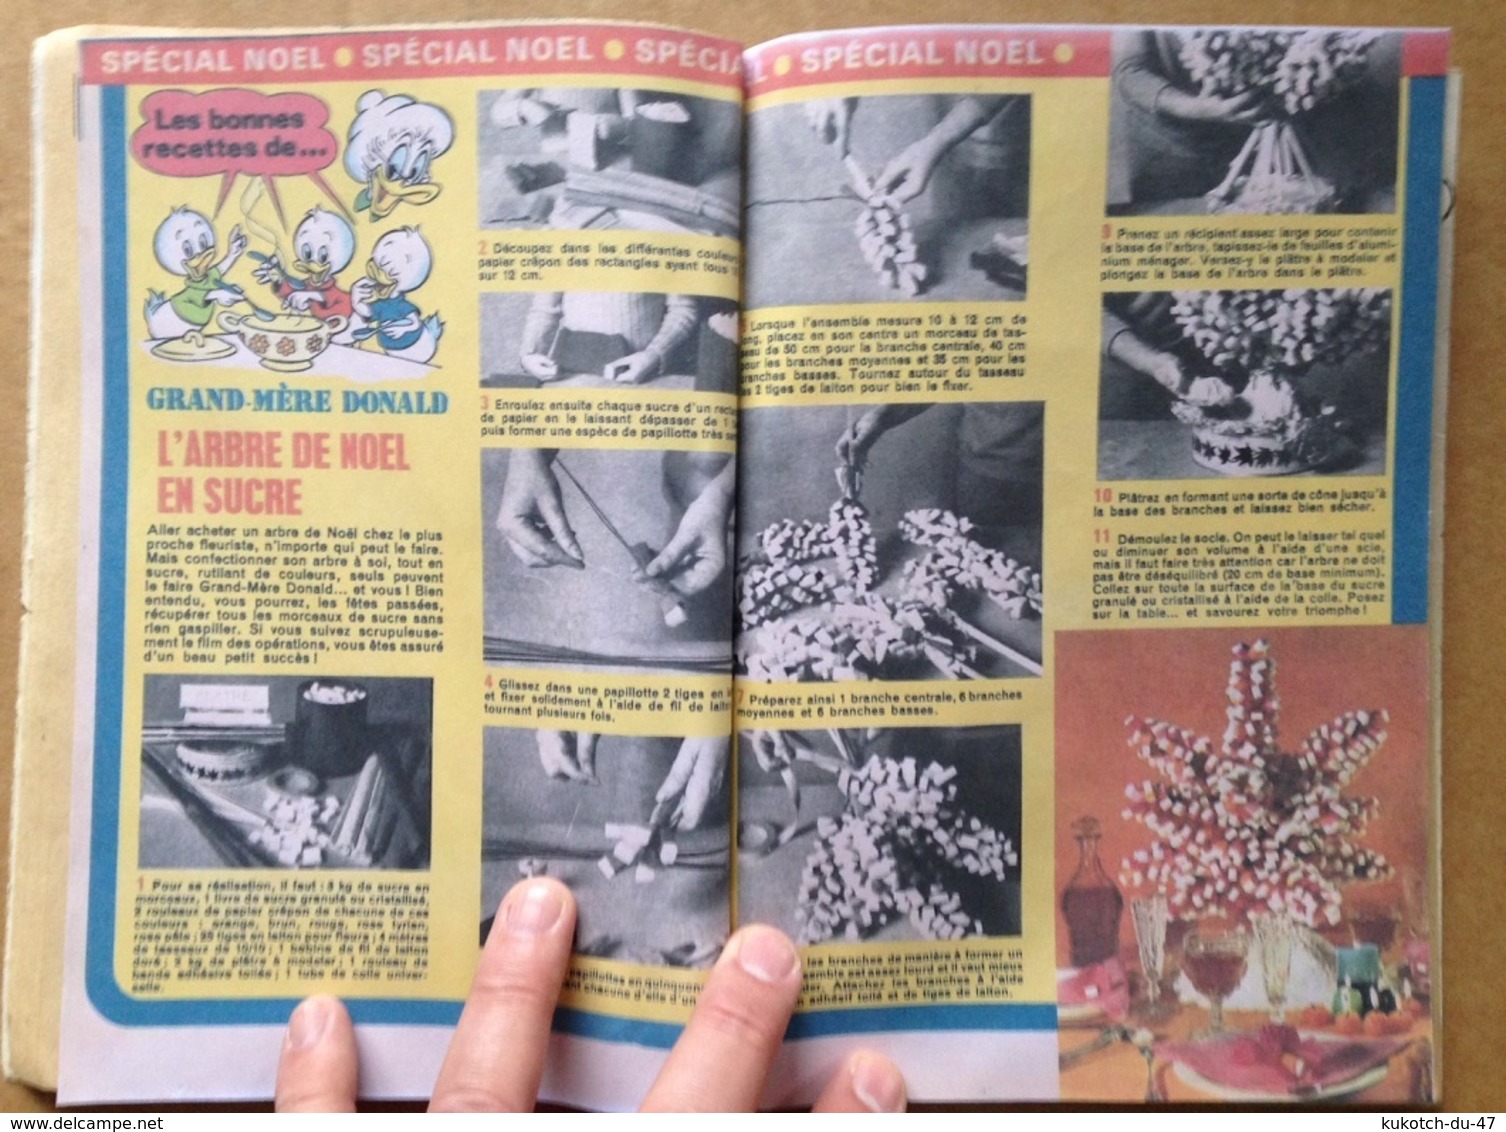 Disney - Picsou Magazine - Année 1975 - N°35 (avec grand défaut d'usure)